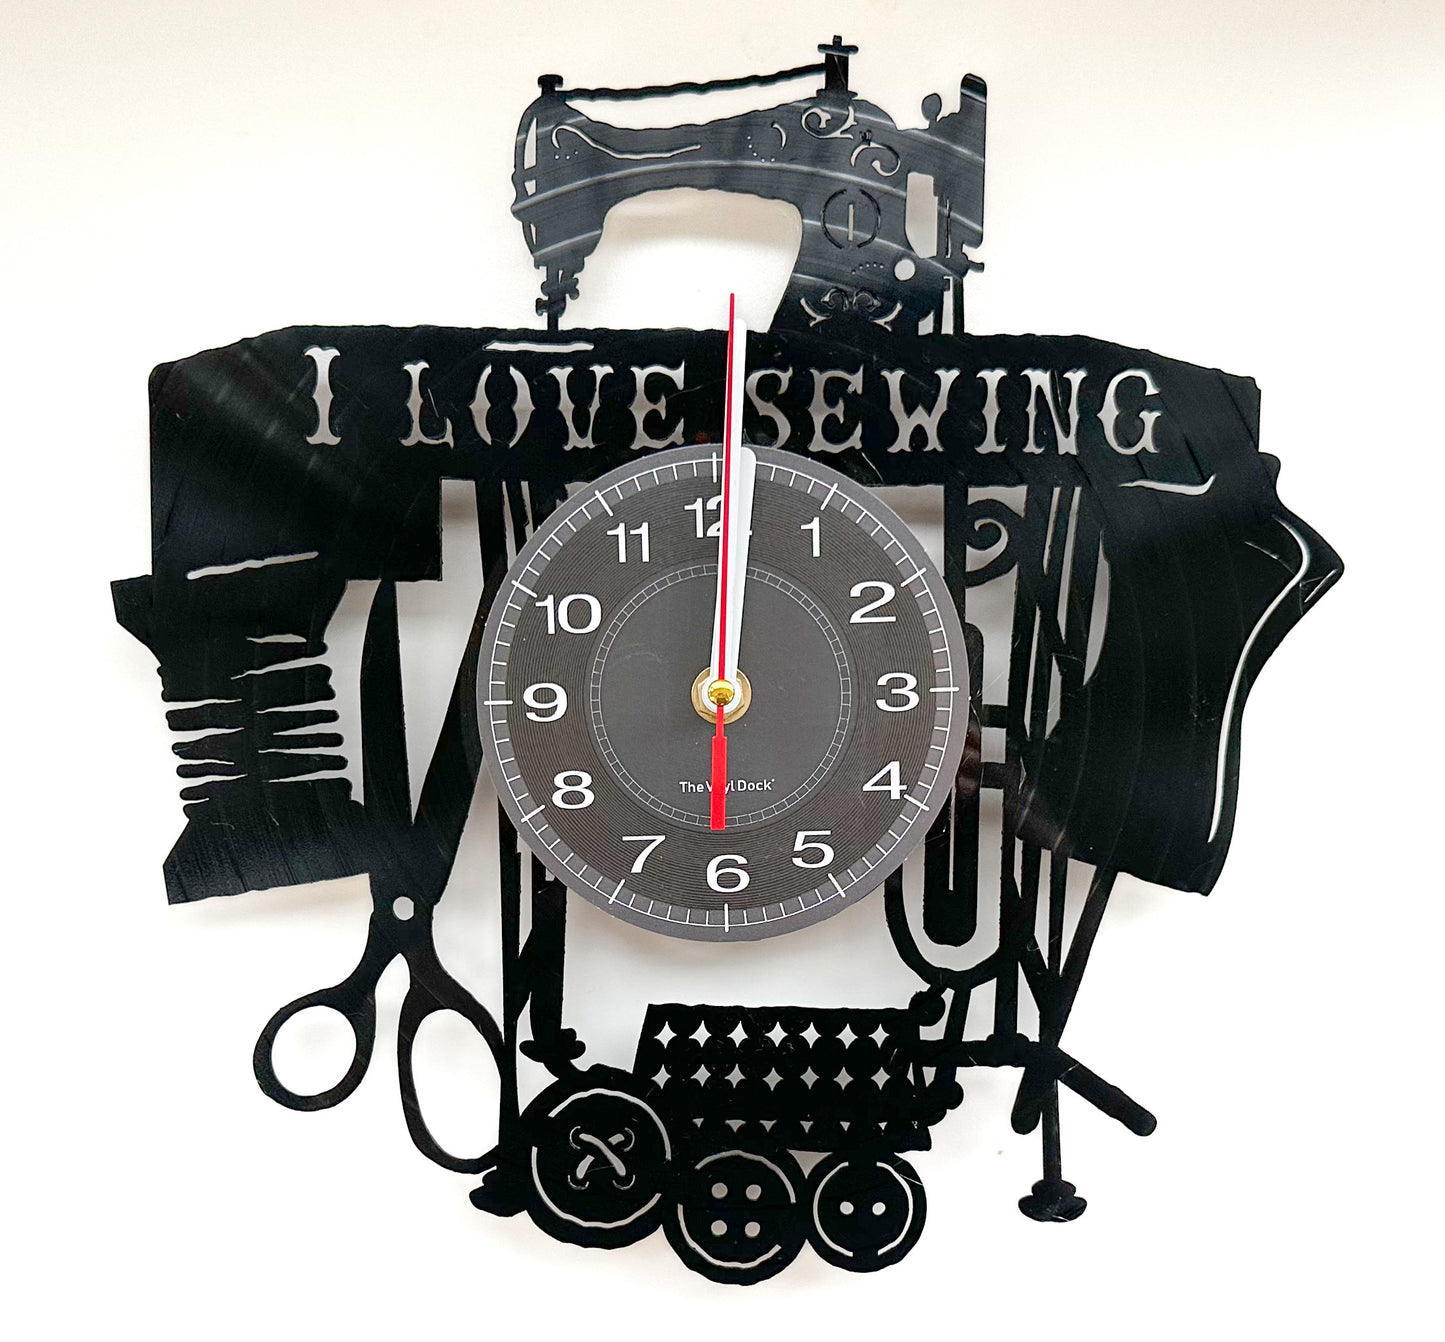 Sewing machine clock